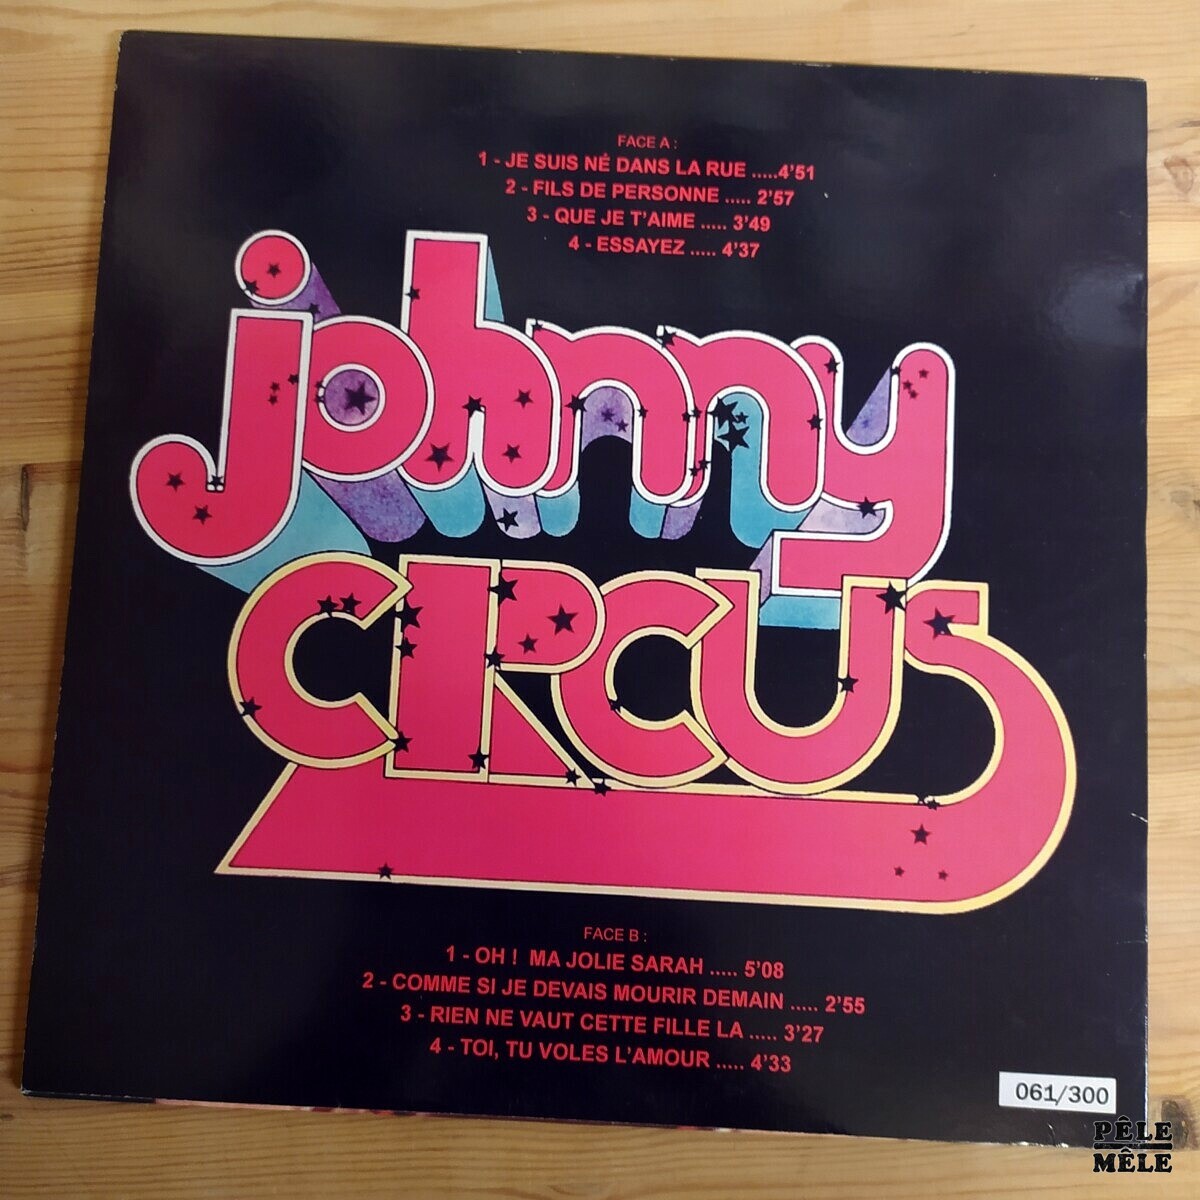 Johnny Hallyday - The Picture Disc Collection 2 - Vinyle N°04 - Le Plus  Beau Des Jeux (12, Dlx, Ltd, Pic, RM, yel)